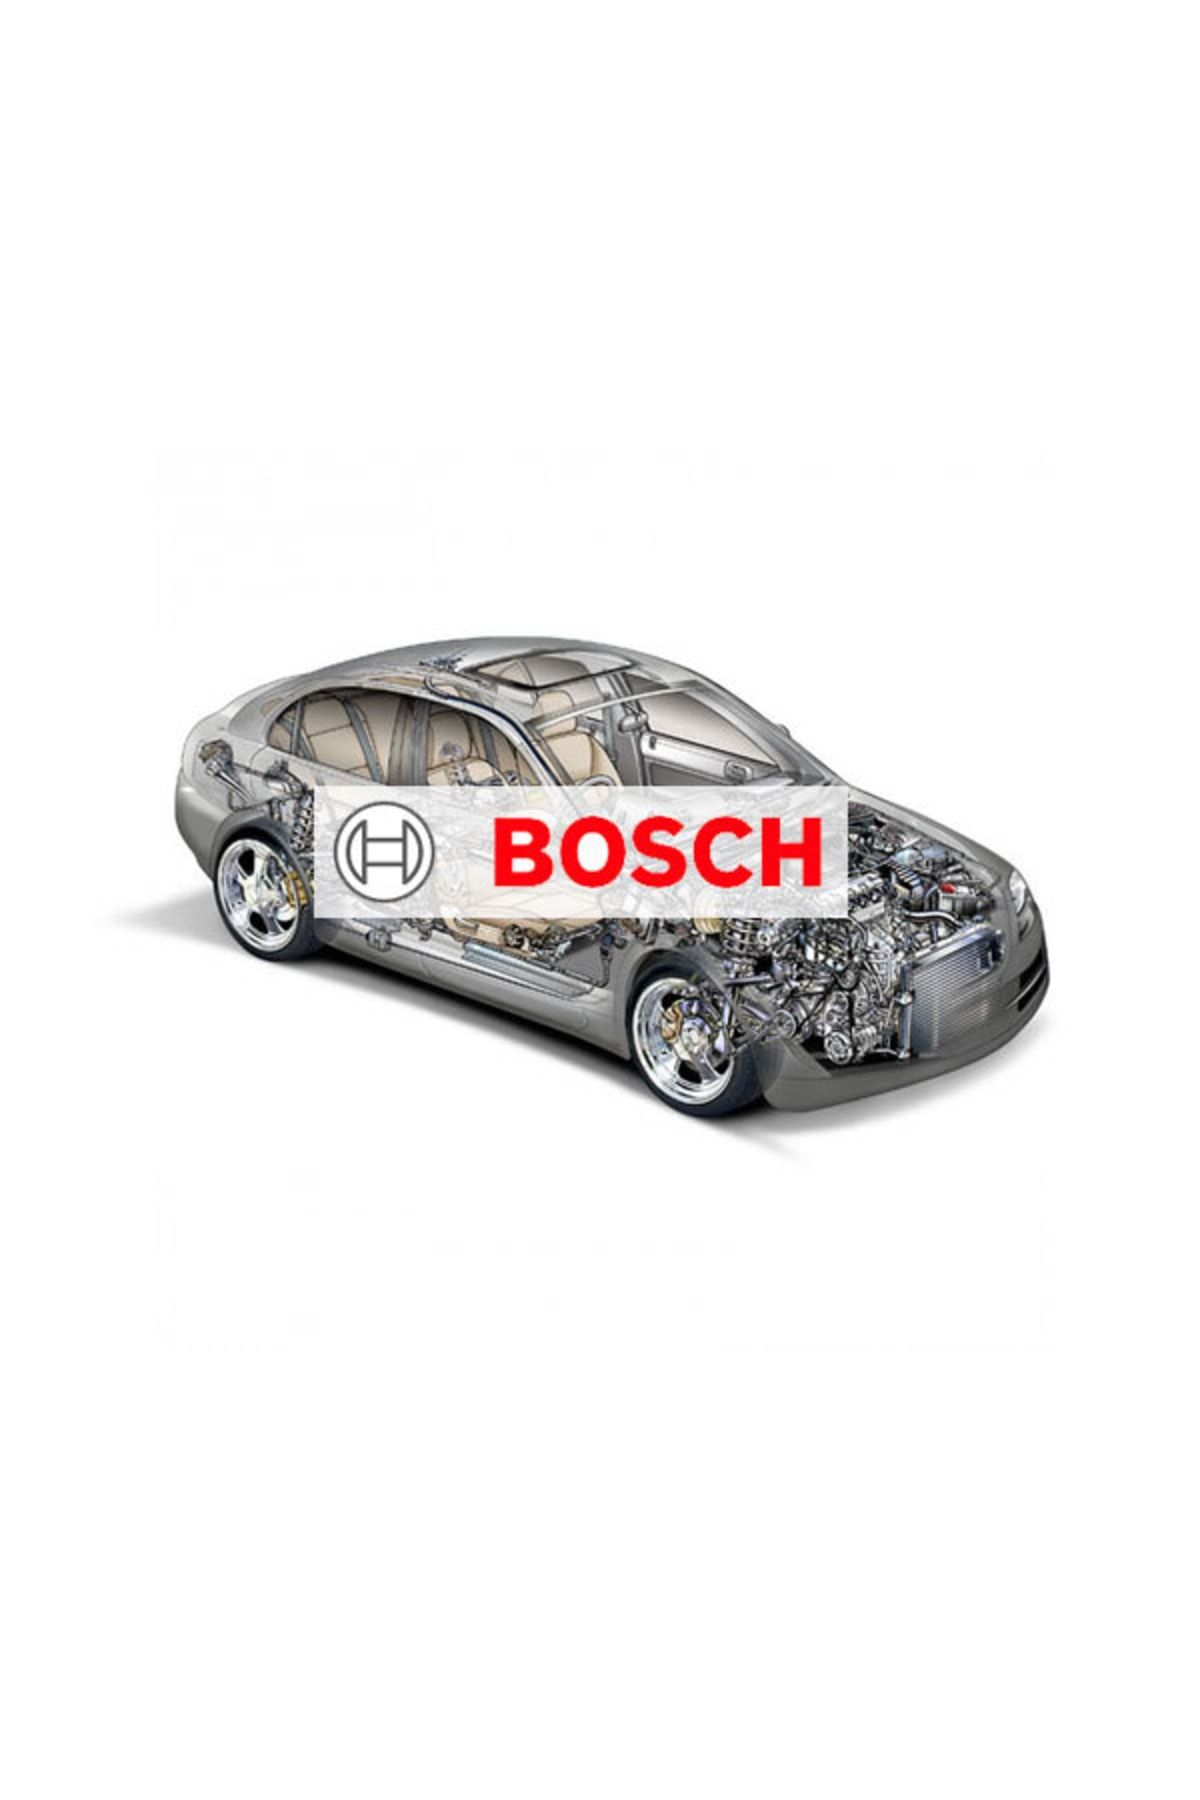 Bosch Dıreksıyon Pompası Mekanık Benz E 200 Cdı 98-07 02-03